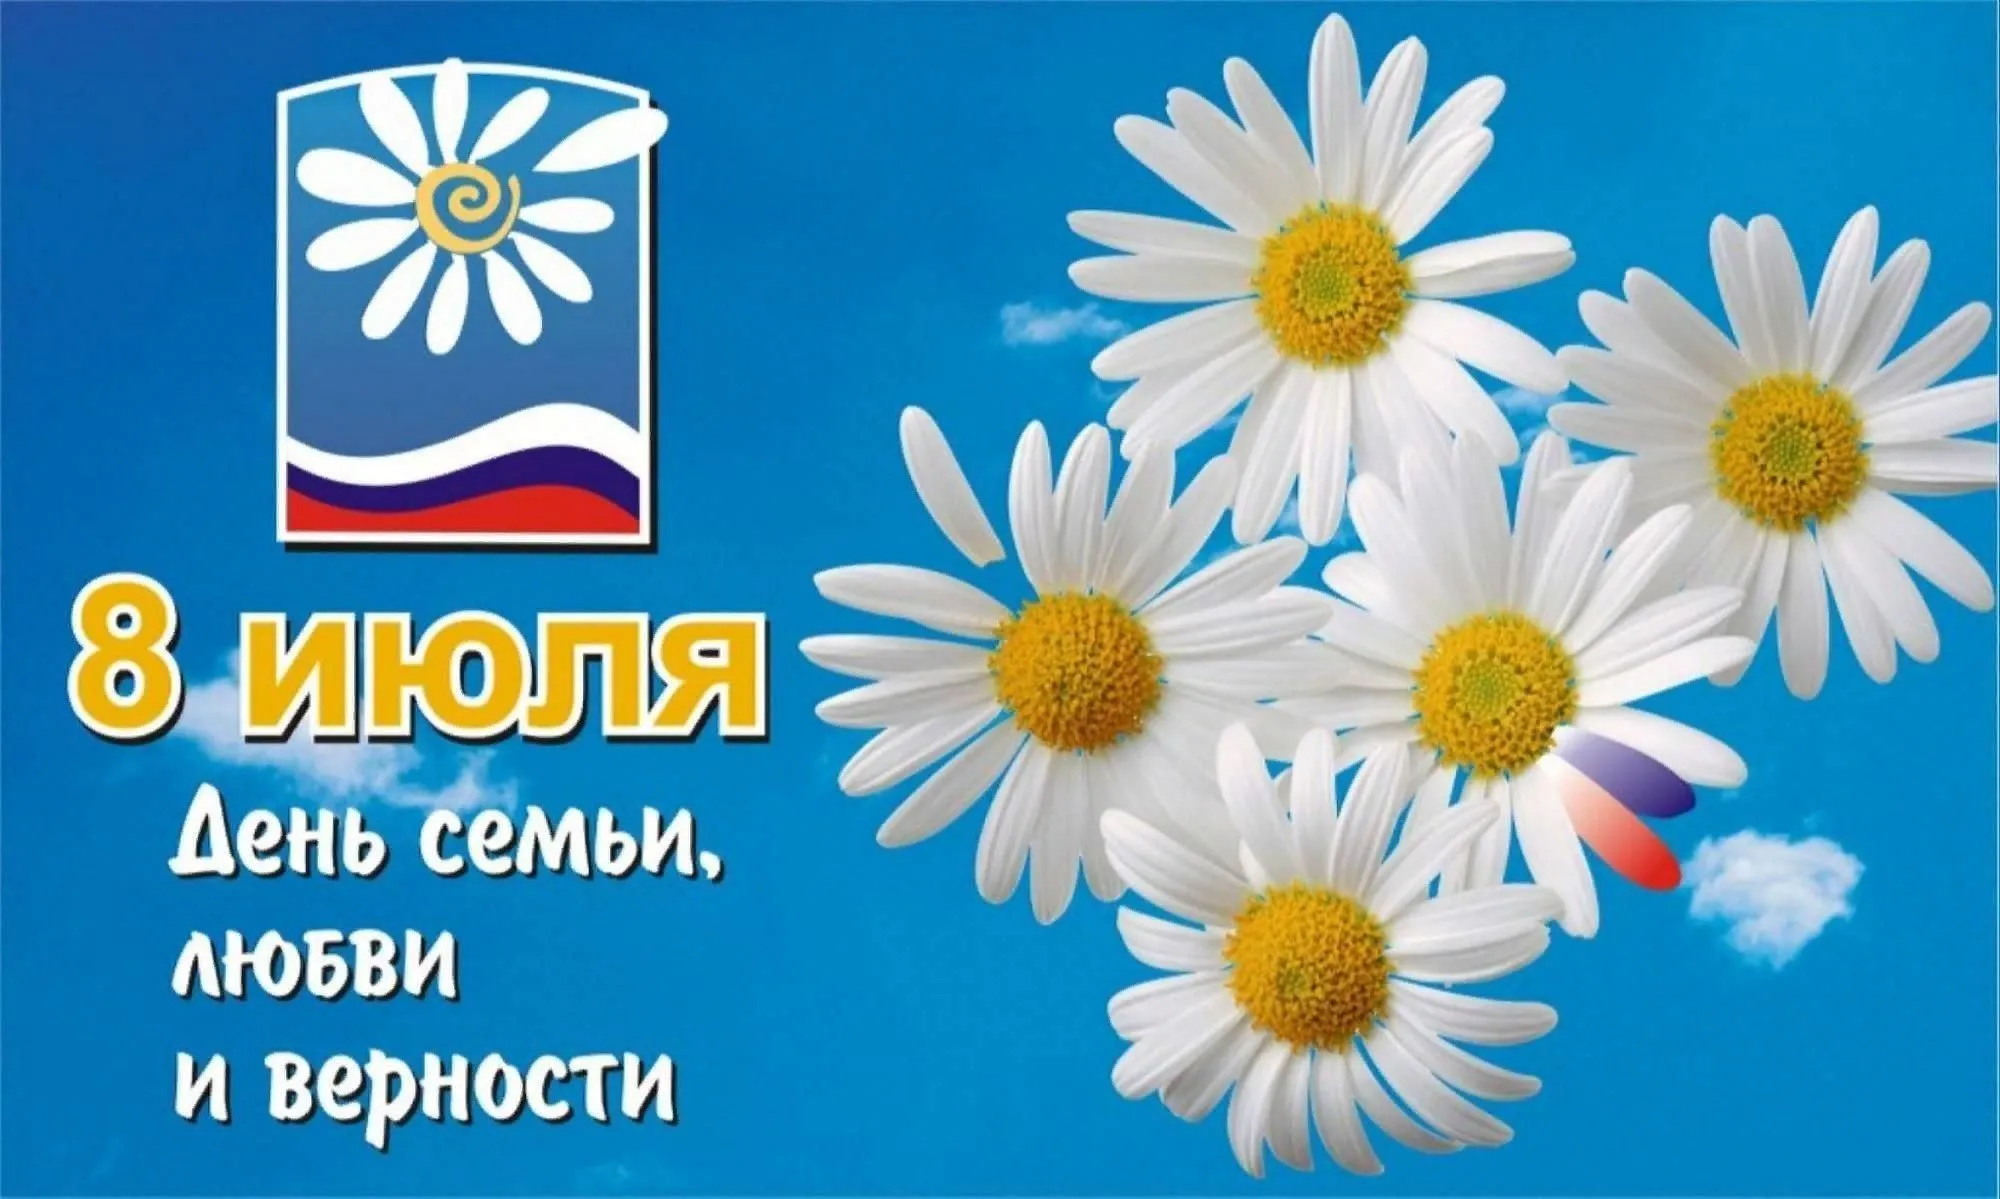 8 июля в России празднуется День семьи, любви и верности.